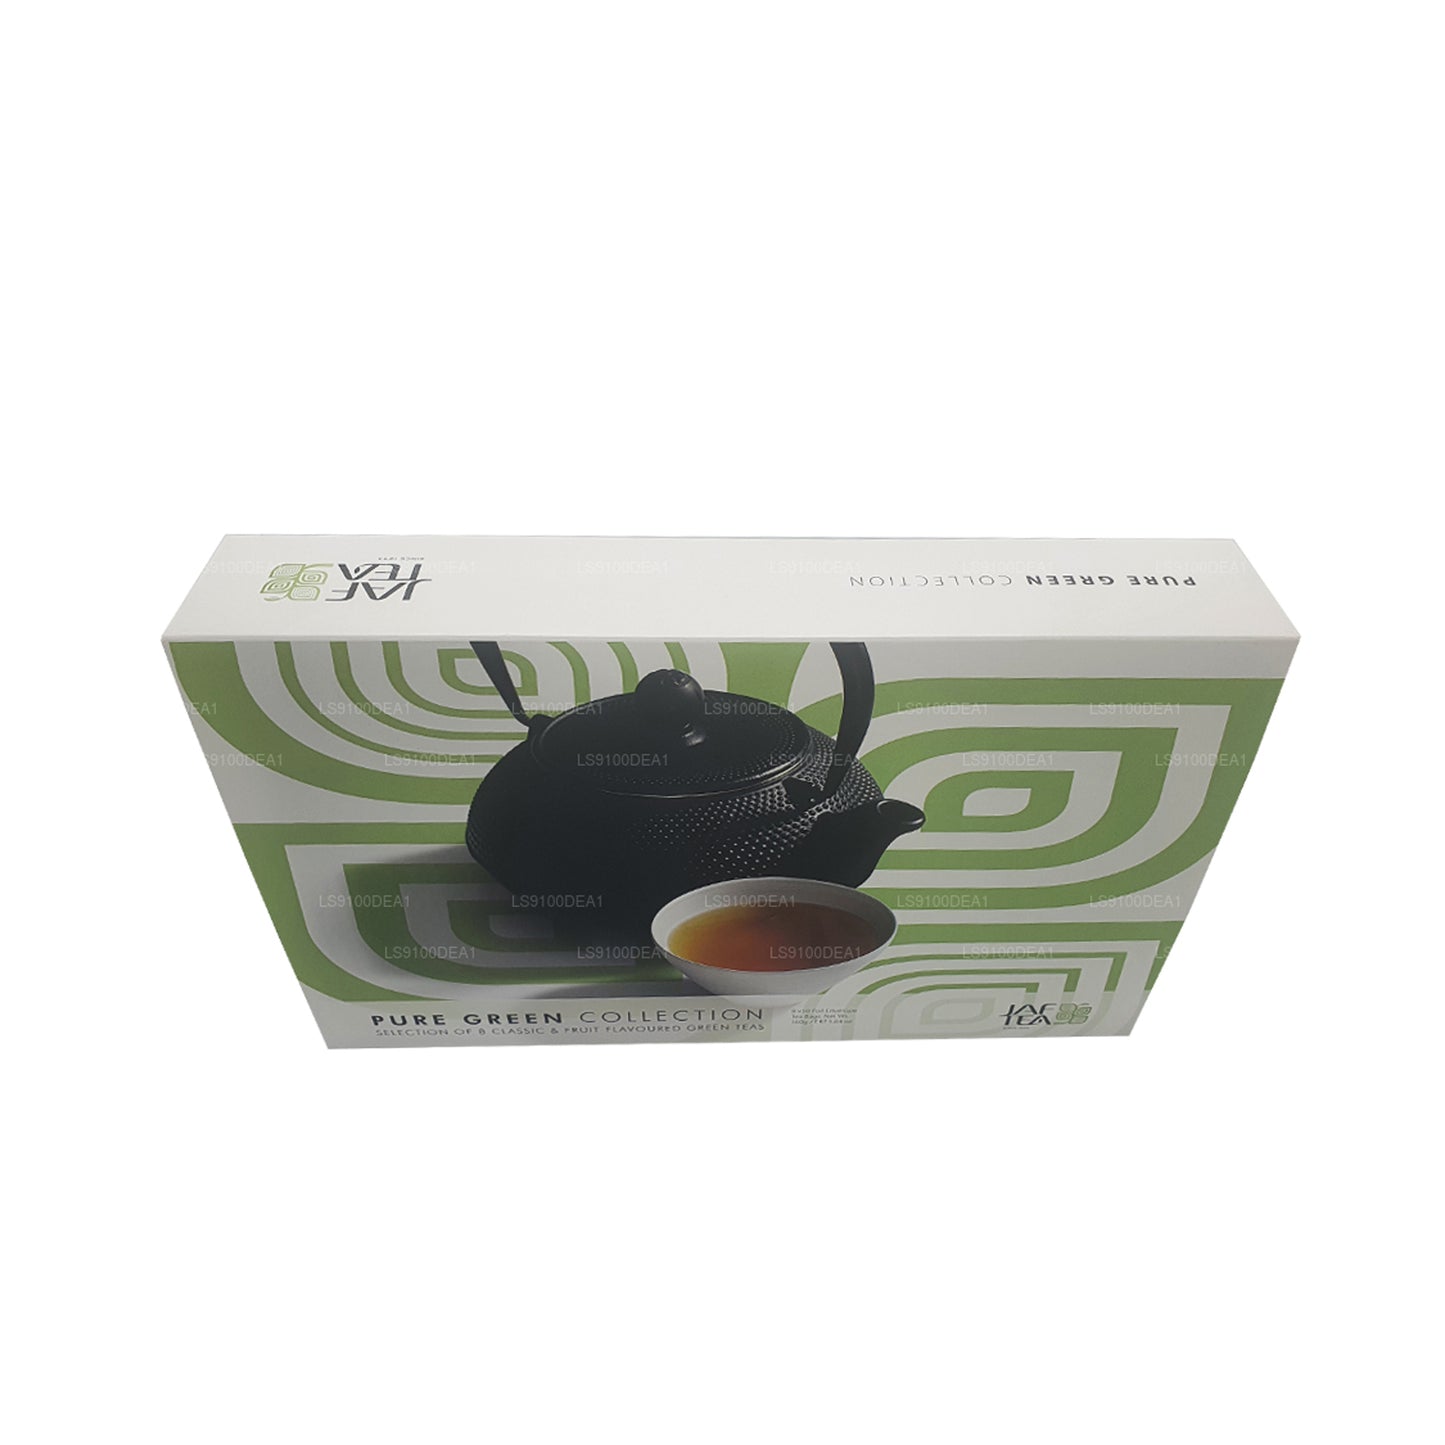 Коллекция Jaf Tea Чистая зеленая (160 г) 80 пакетиков